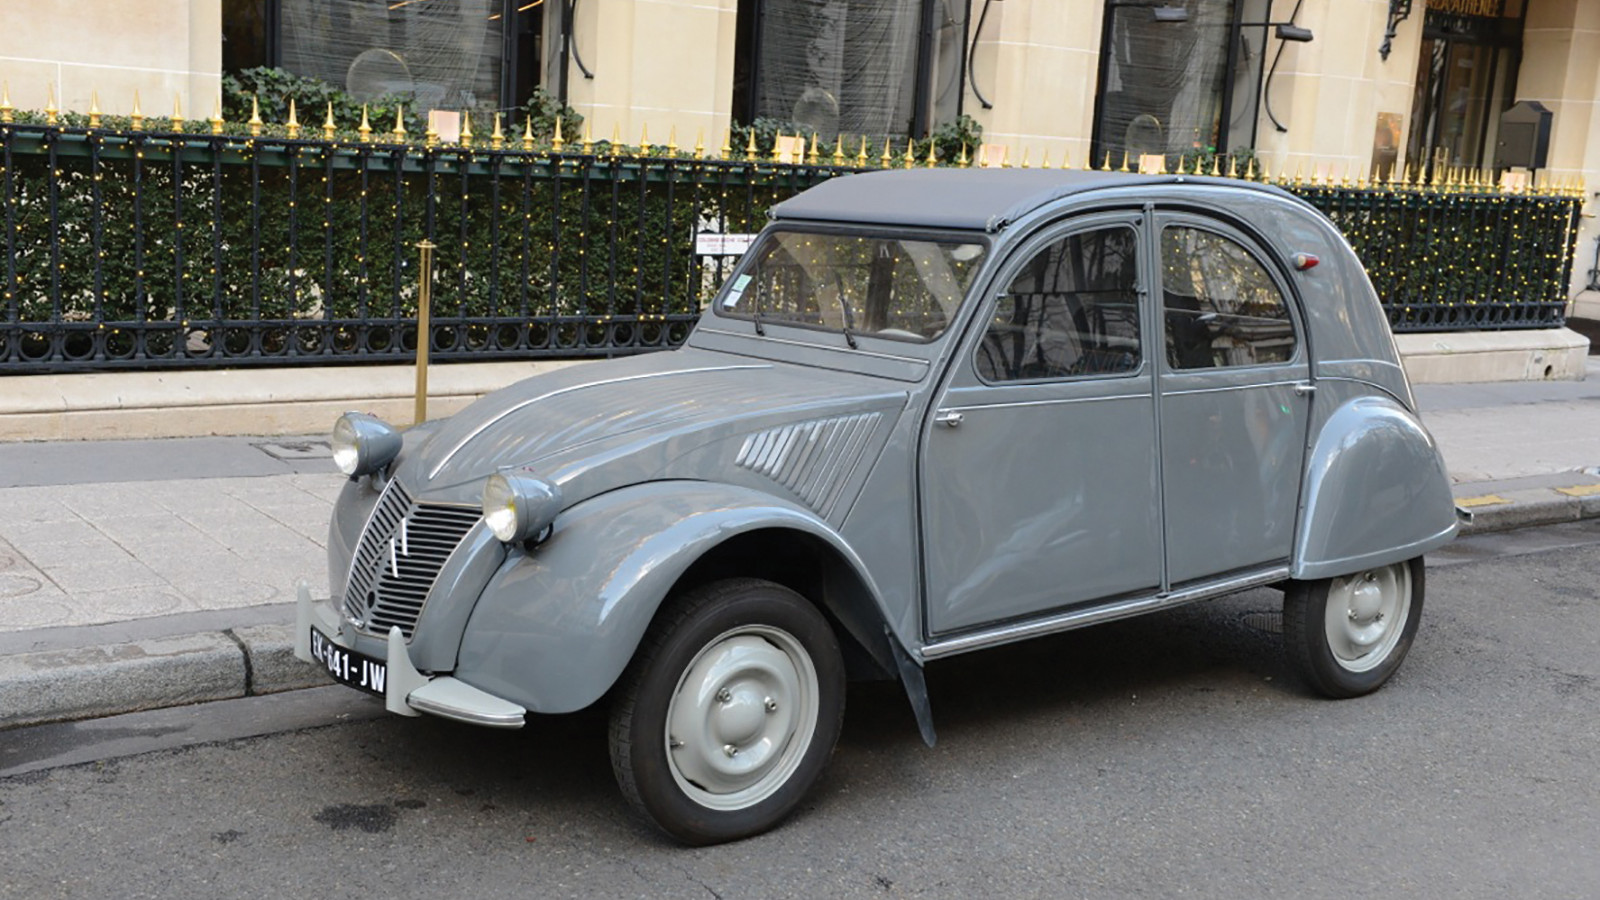 Vor 50 Jahren kam die Citroën Dyane auf den Markt